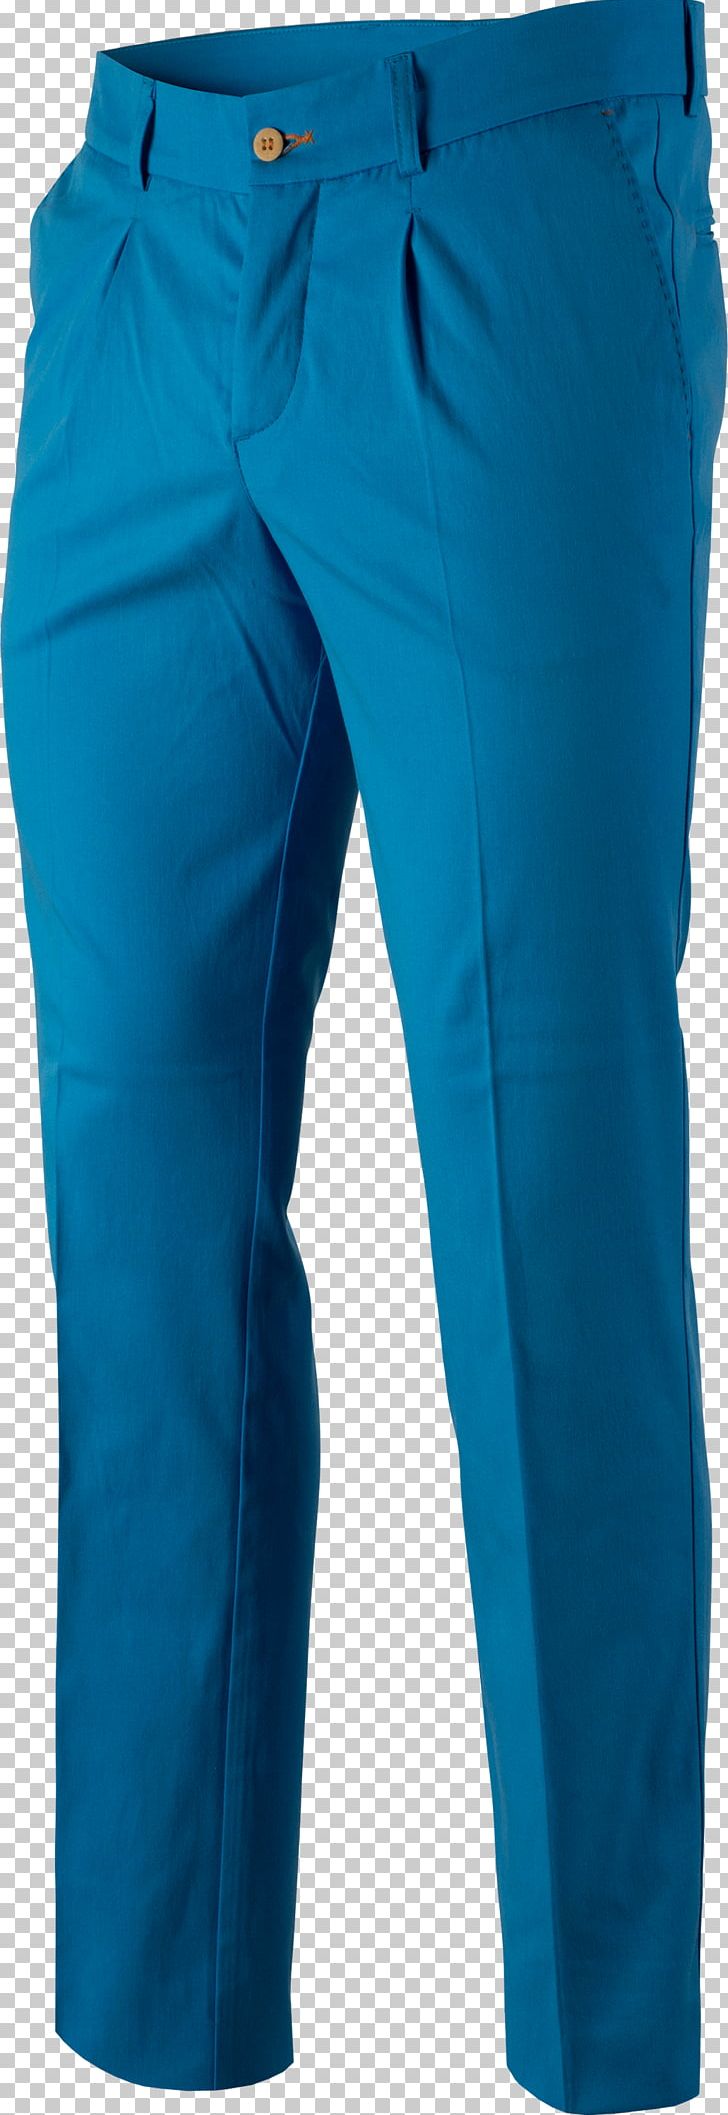 Jeans Cobalt Blue Waist Pants PNG, Clipart, Active Pants, Aqua, Azure, Clothing, Cobalt Blue Free PNG Download